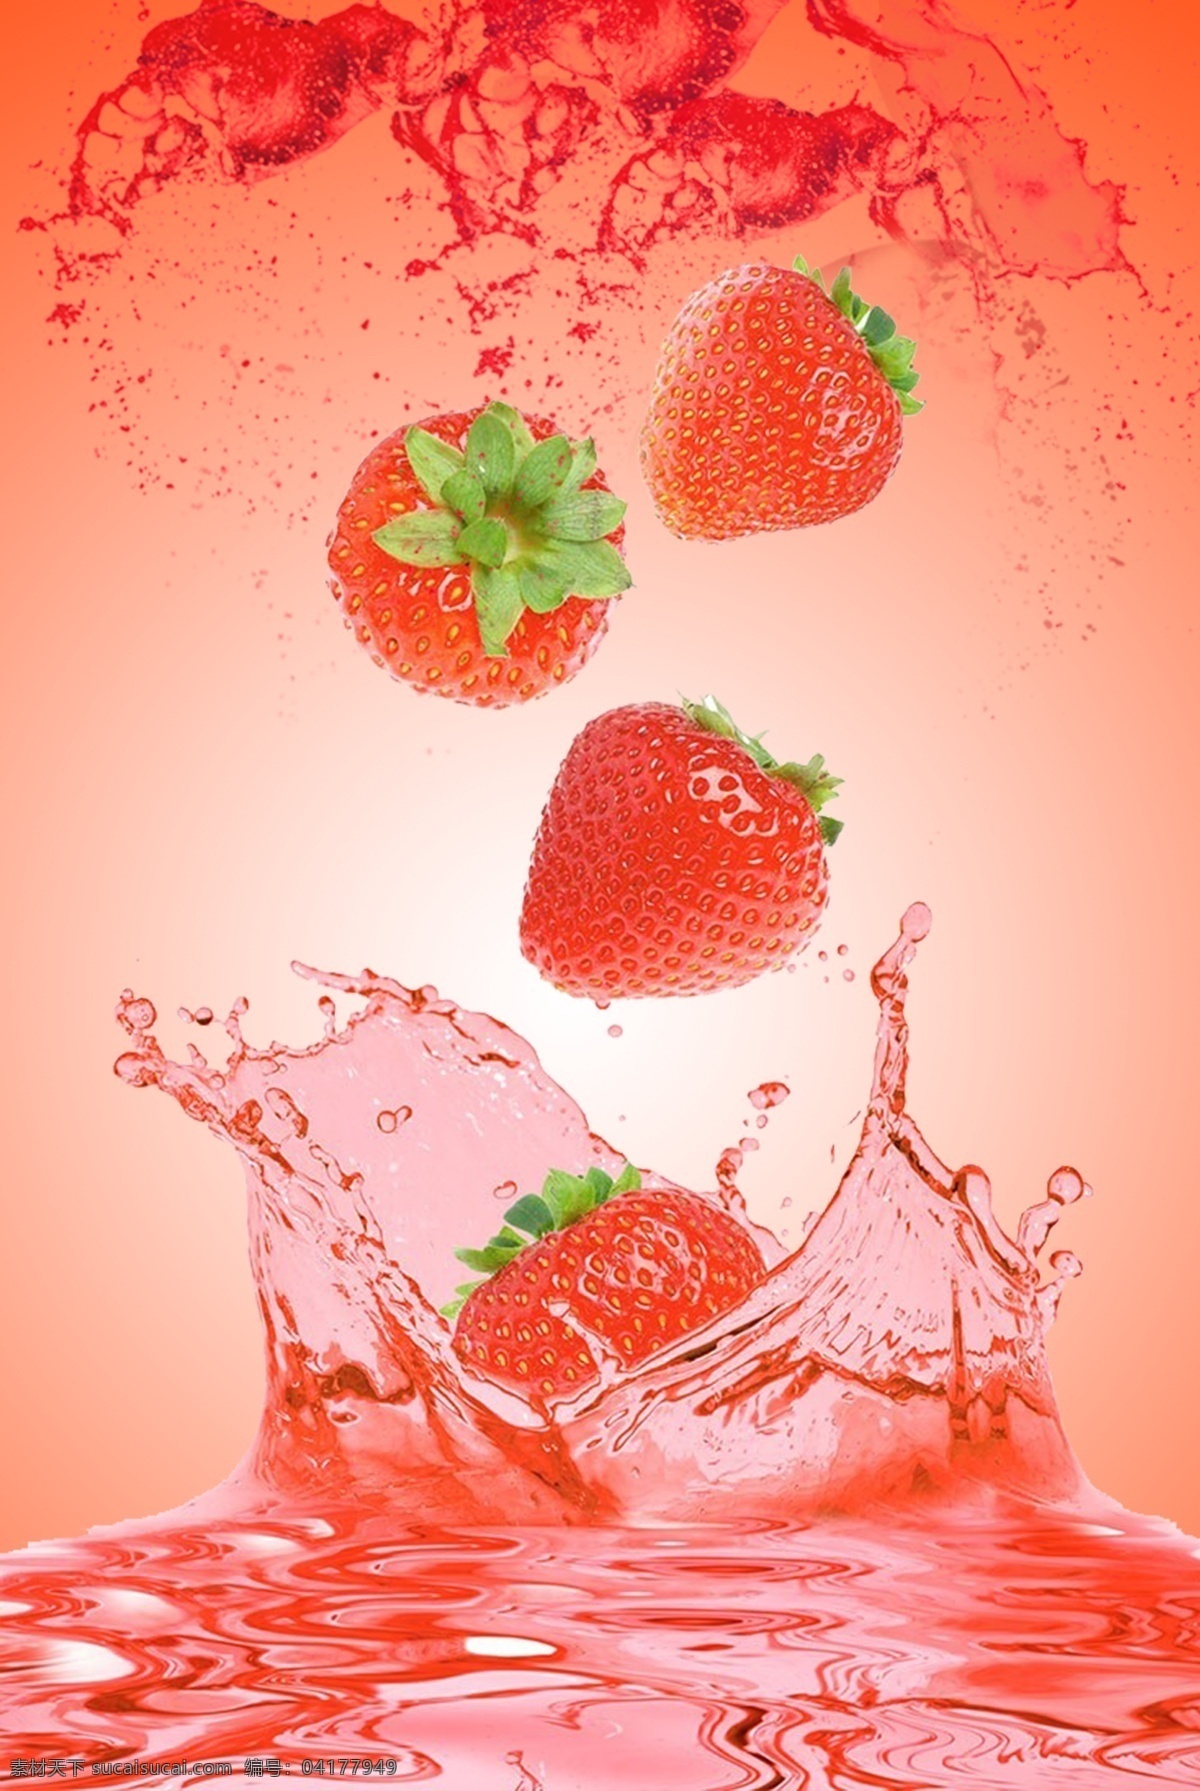 草莓 果汁 创意 背景 h5 美食 食物 新品 促销 特惠 美食宣传 美食素材 背景海报 开心 文艺 小清新 简约